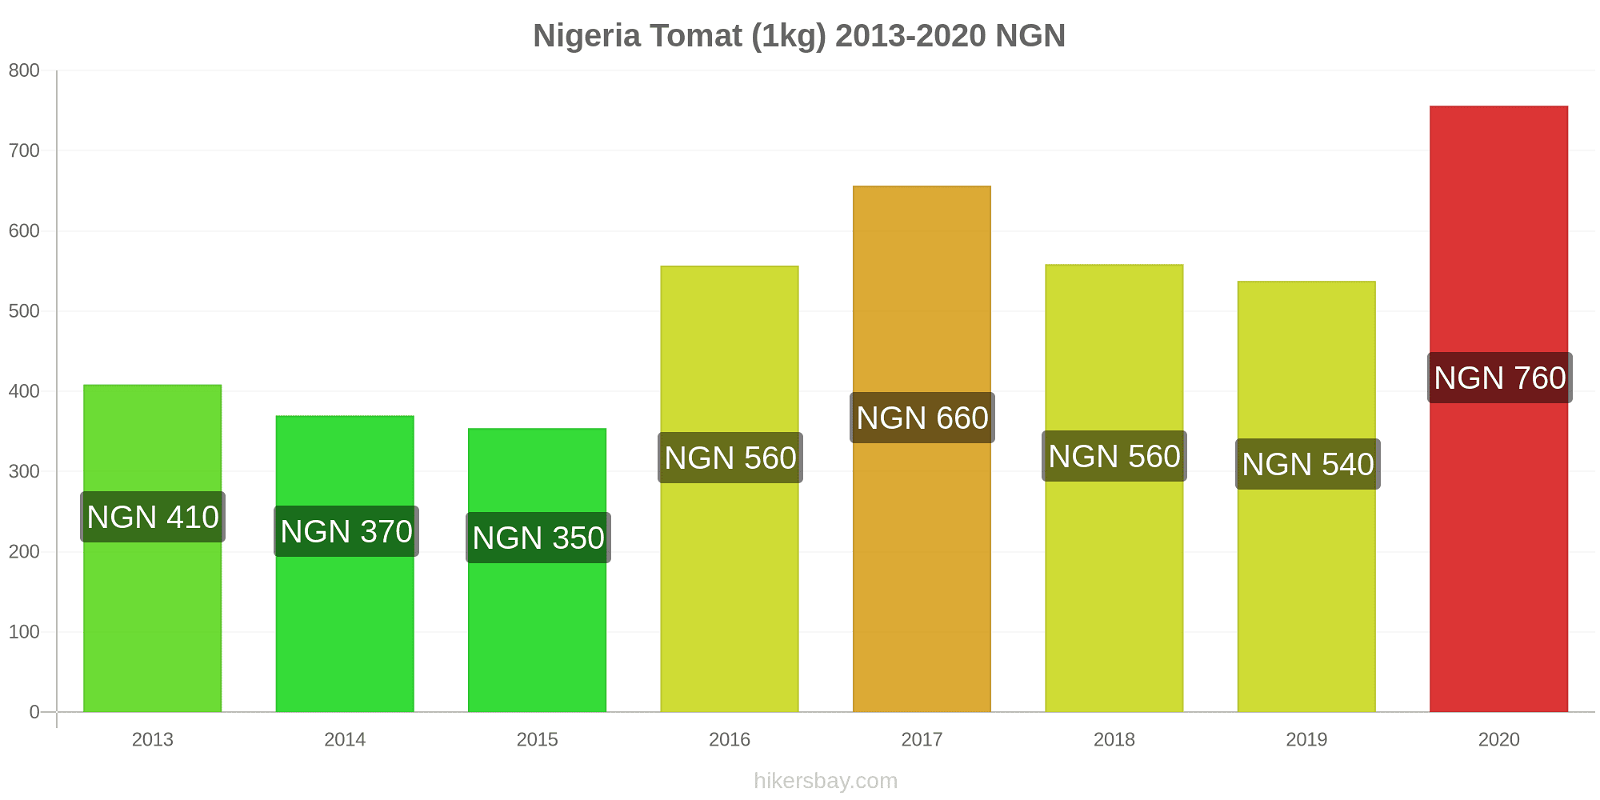 Nigeria prisændringer Tomat (1kg) hikersbay.com